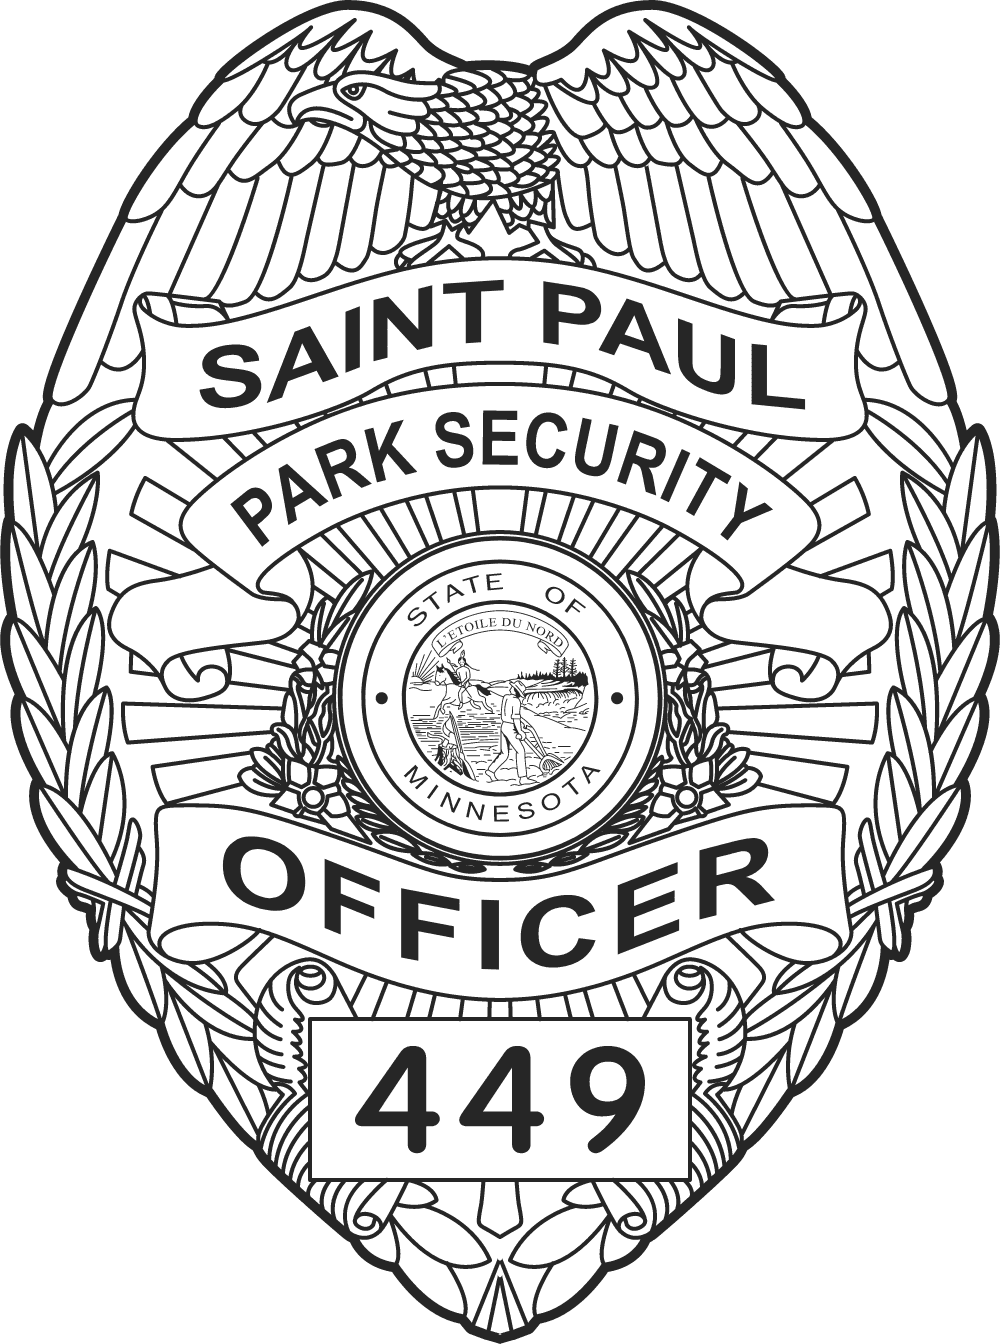 City of Saint Paul Park Security Logo download